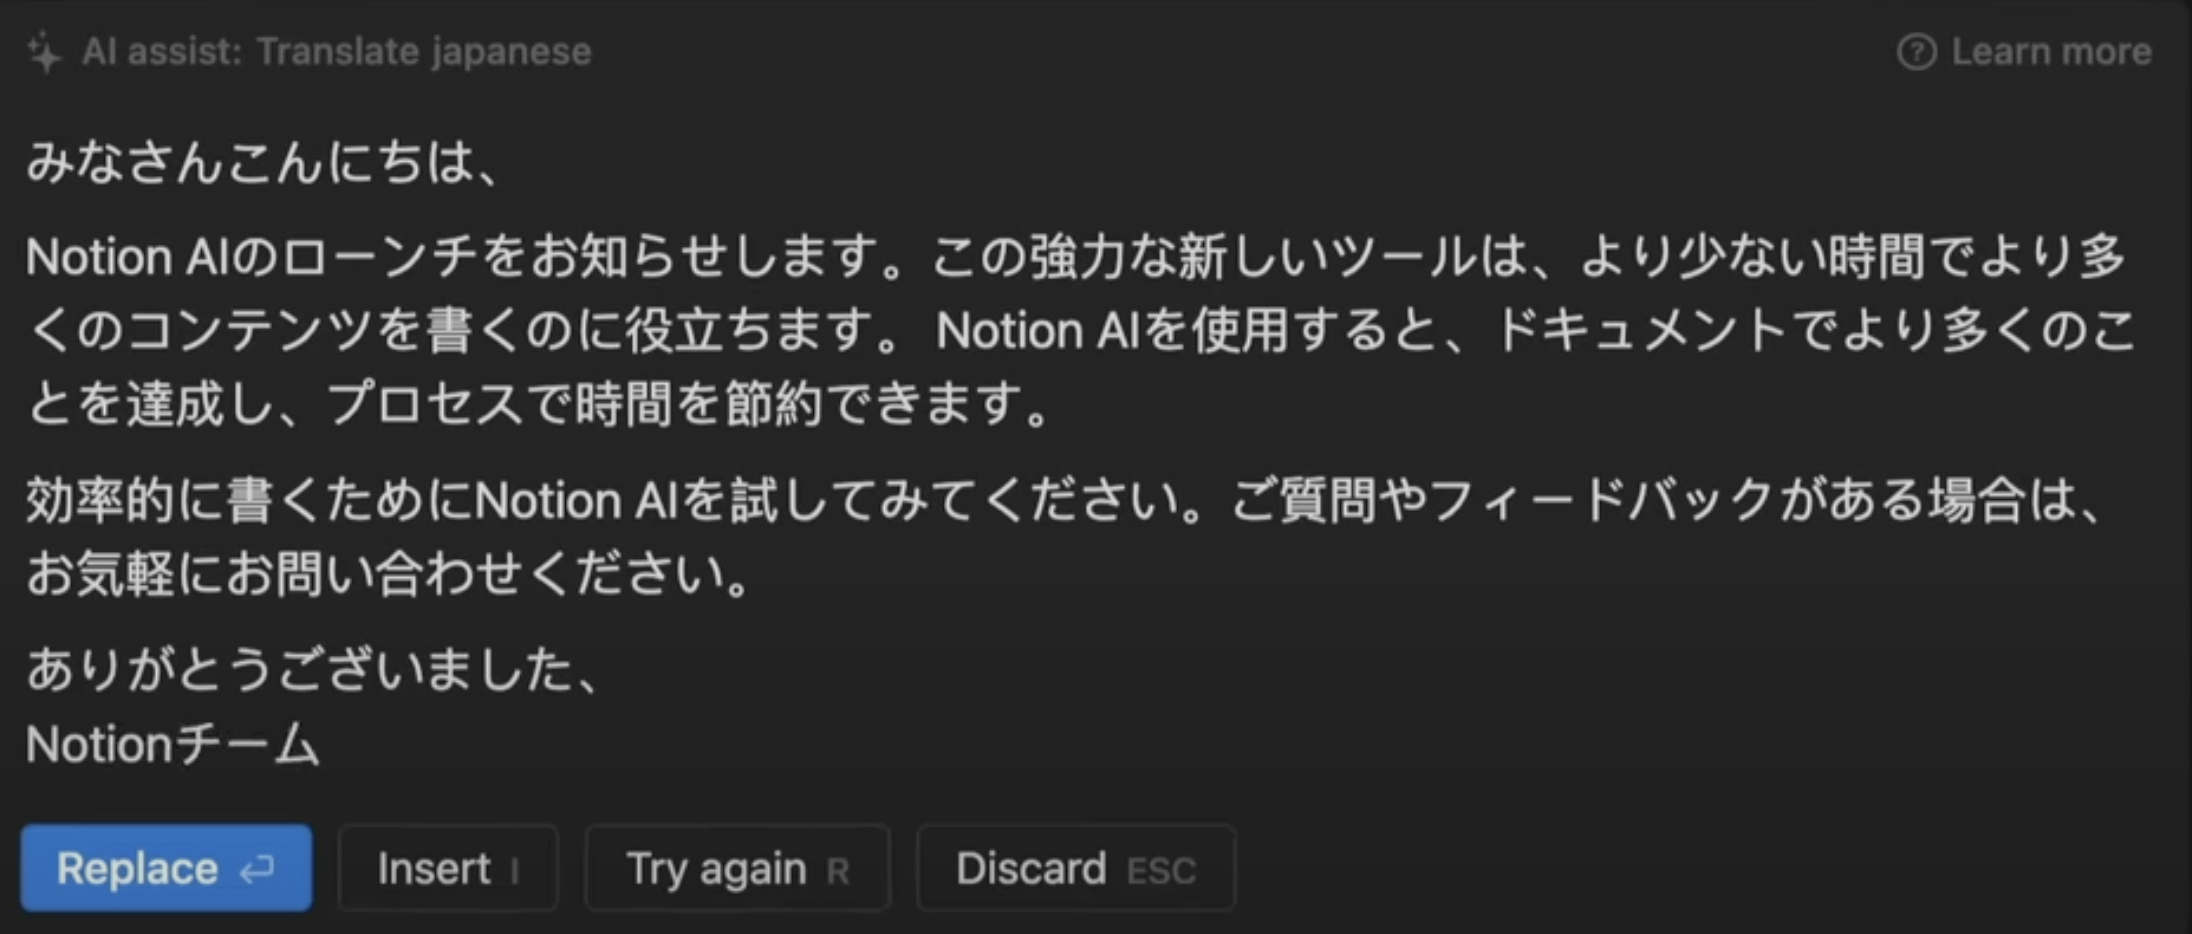 Notion AI translating to Japanese